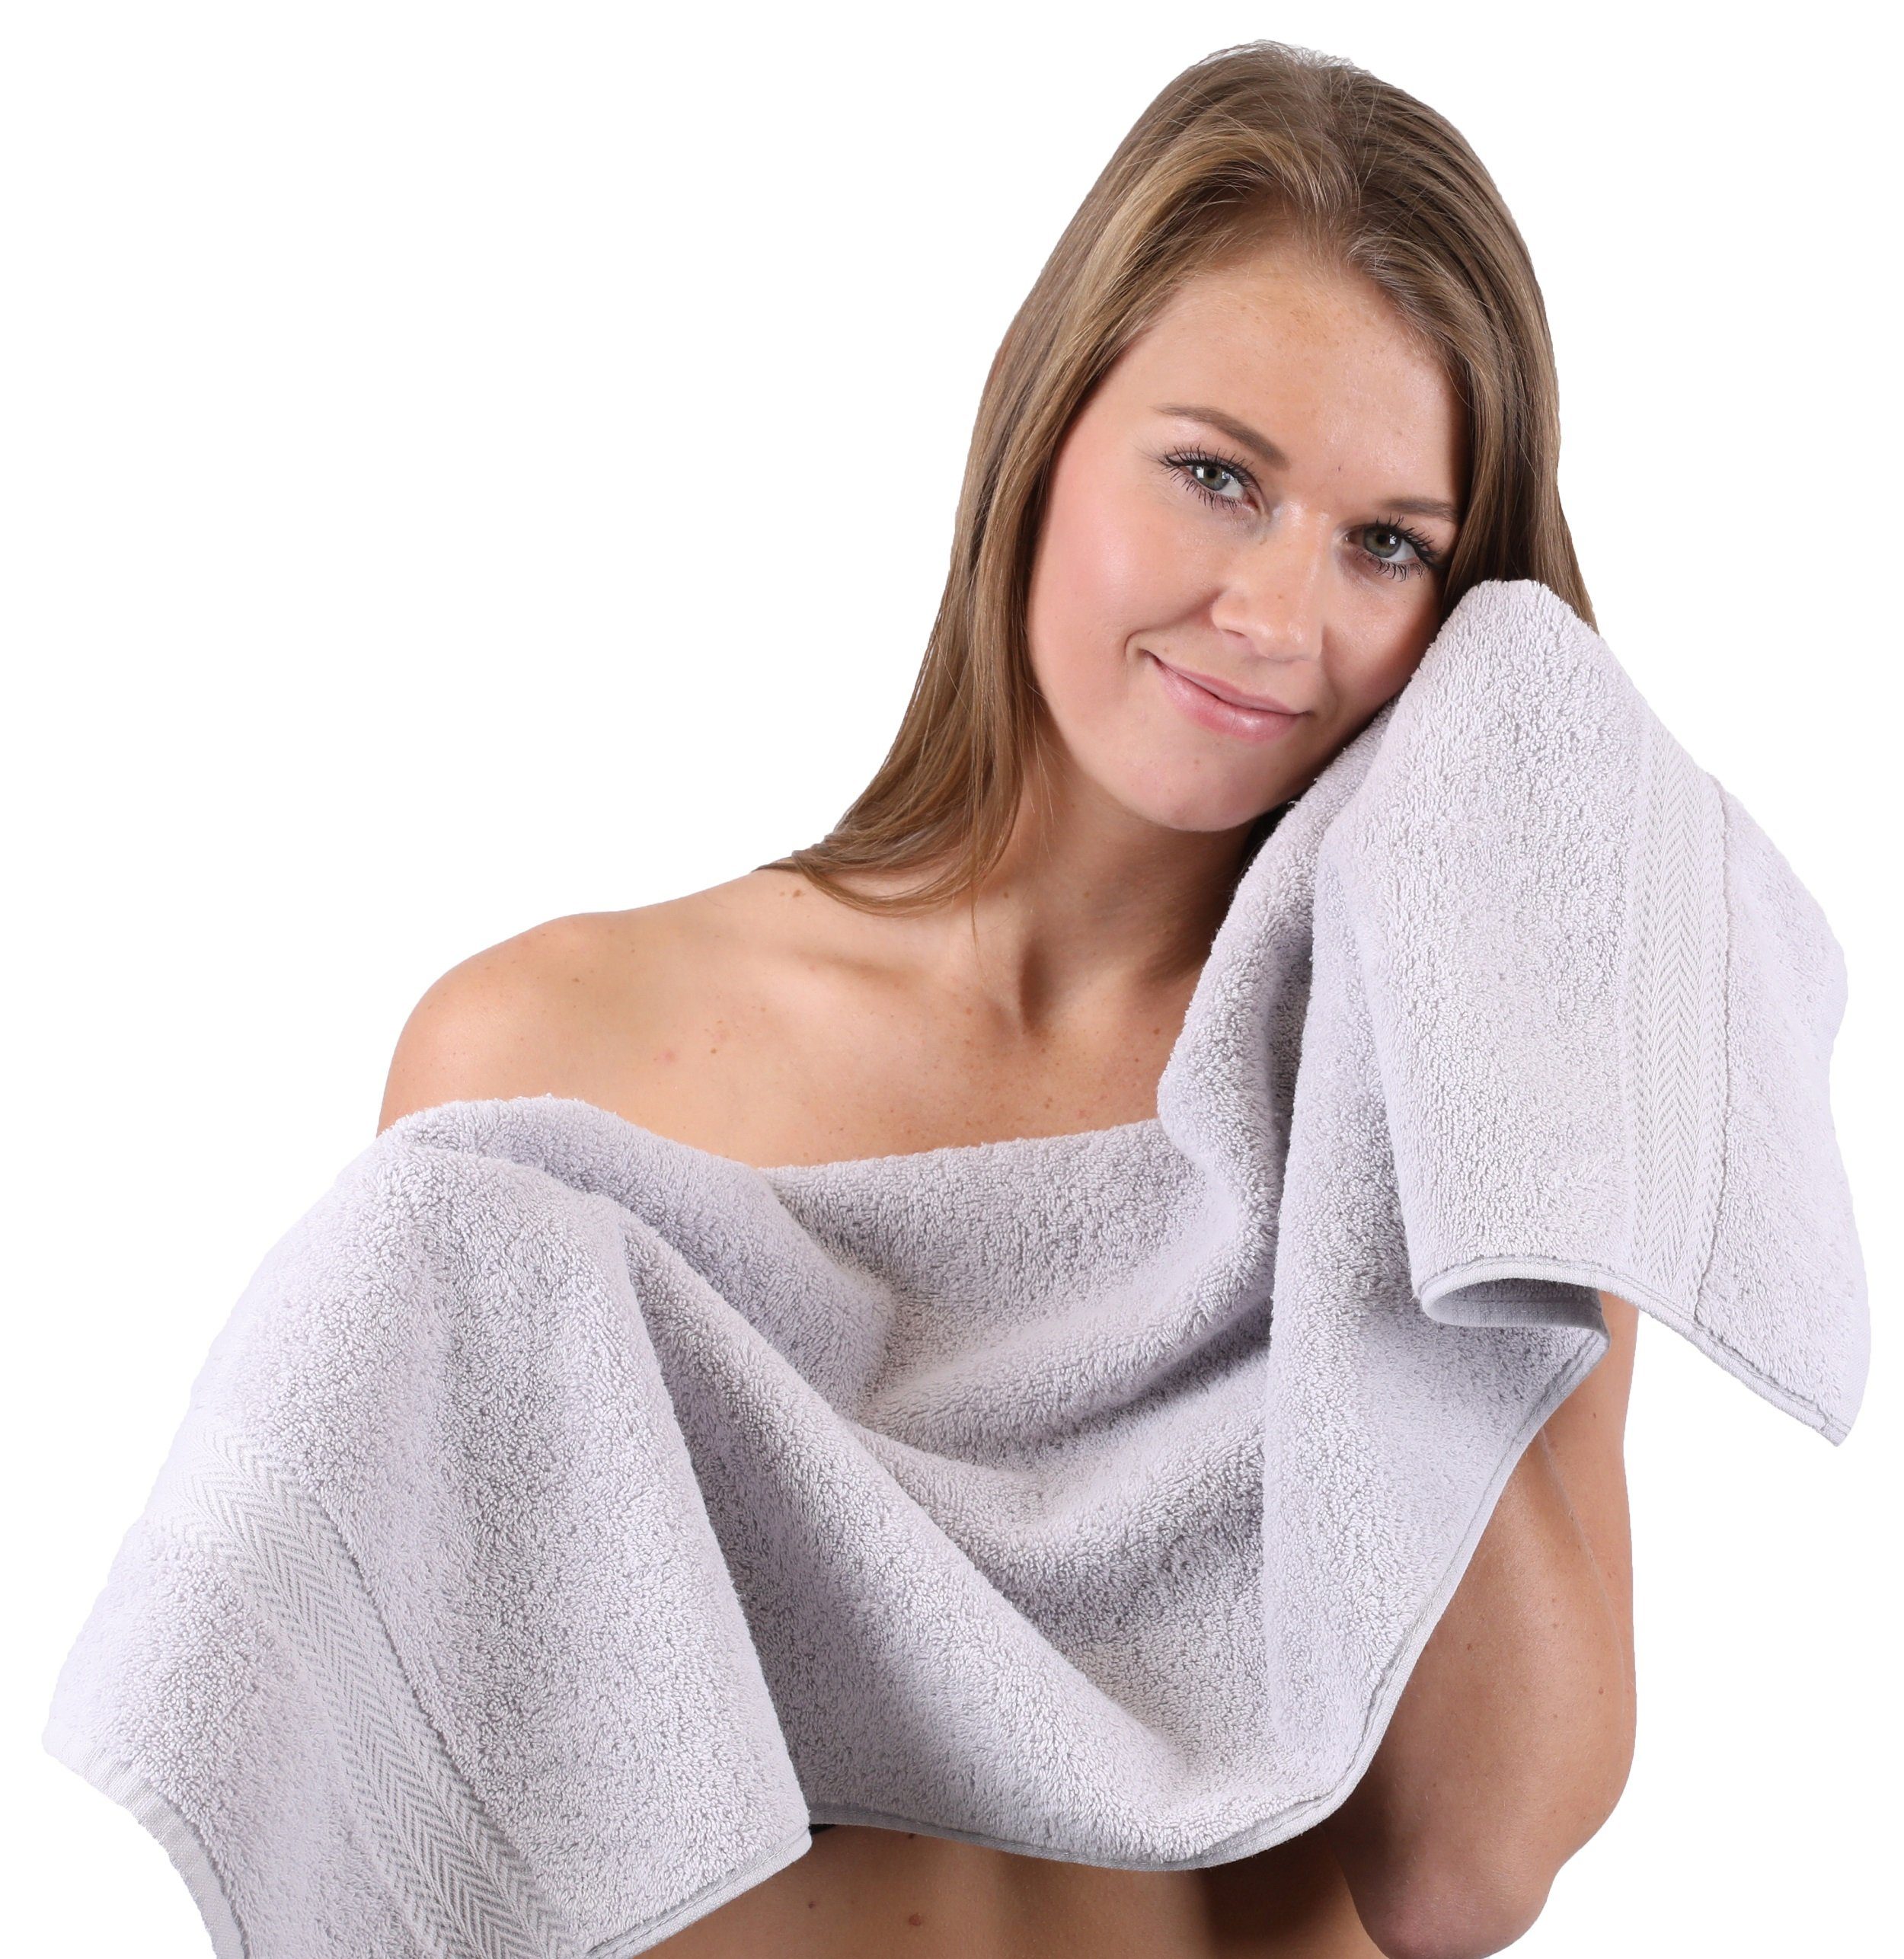 Handtuch-Set Handtuch Baumwolle Set schwarz und 4 Silbergrau, 100% Premium Baumwolle Farbe 2 100% 6-TLG. Duschtücher Betz Handtücher